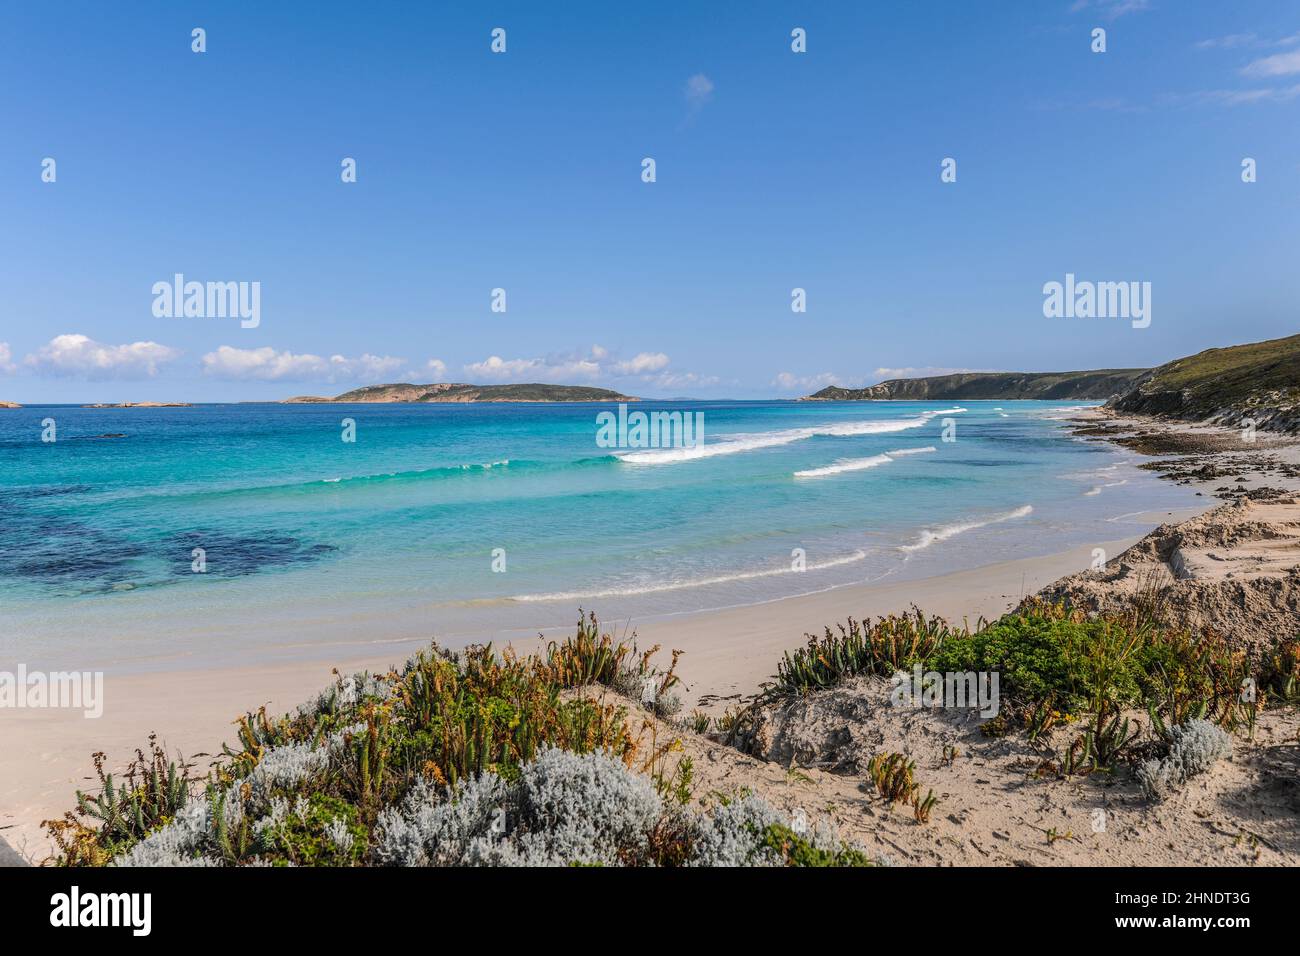 Plage de pique-nique, sable blanc, mer bleue et vue côtière près d'Esperance, WA, Australie Banque D'Images